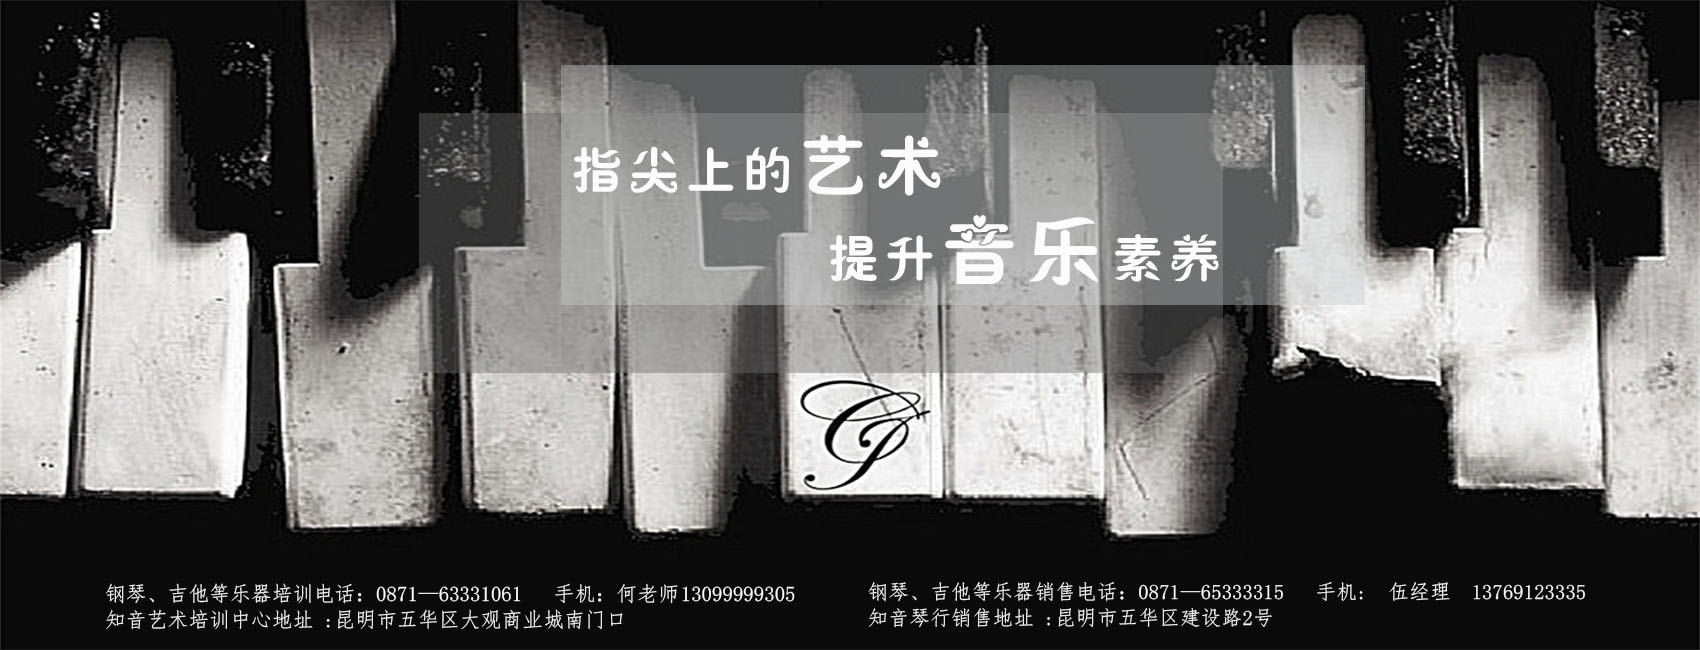 云南钢琴培训学校针对现阶段钢琴教育中存在的问题